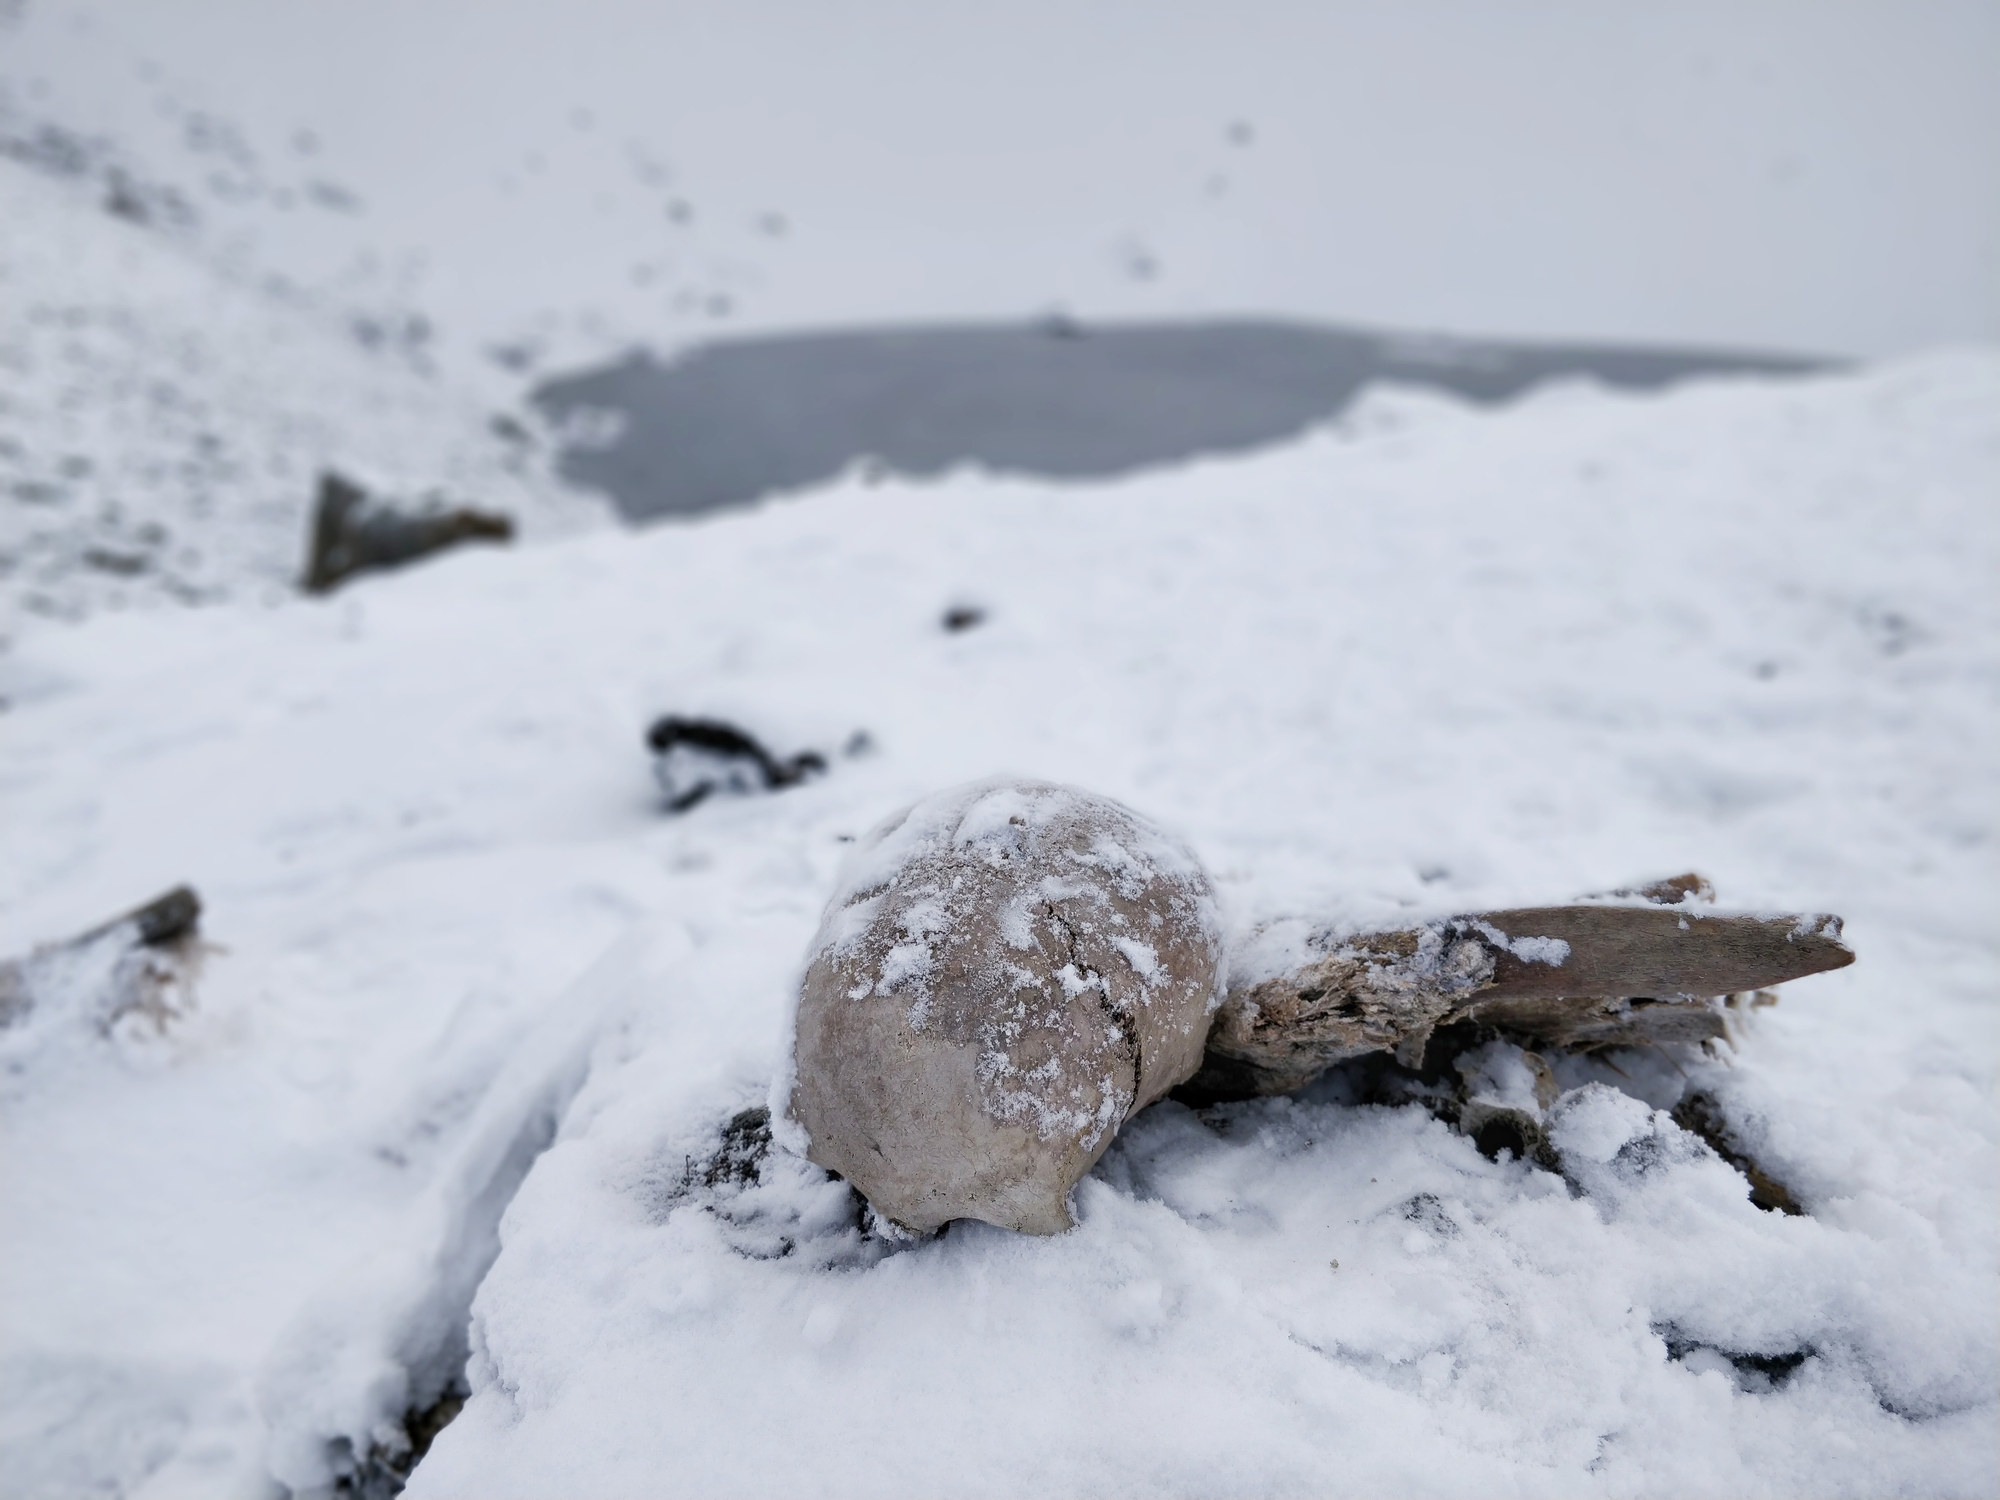 Skeletal remains in snow